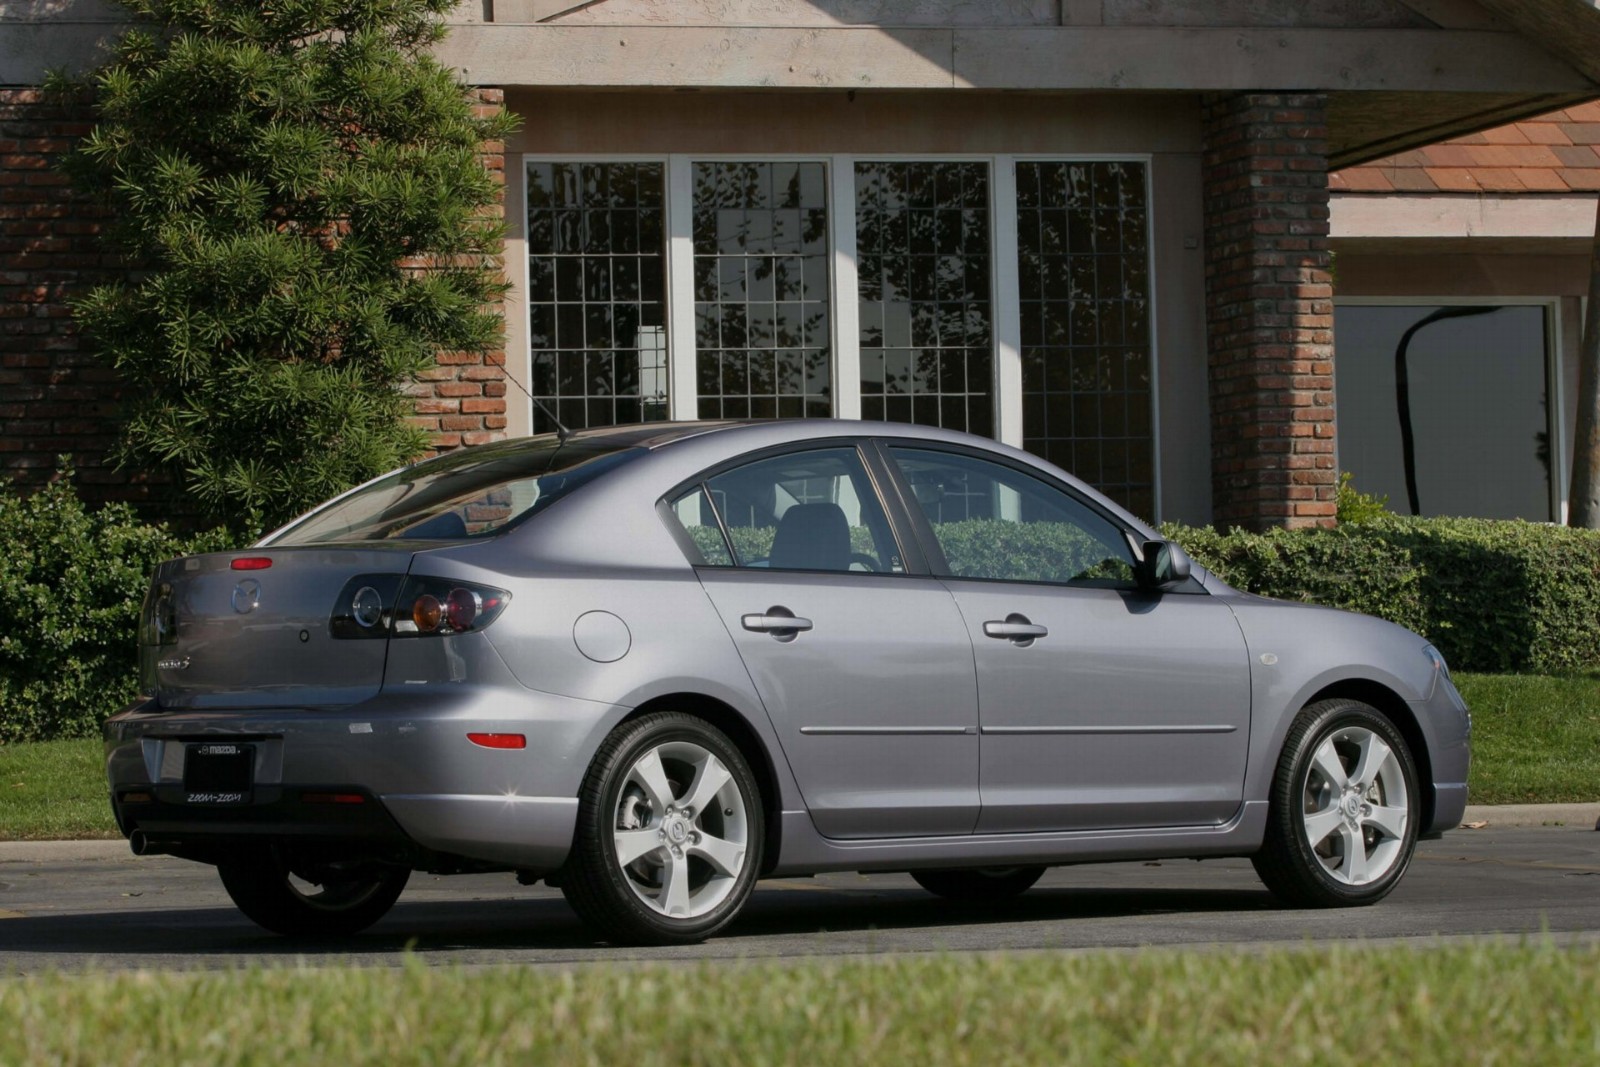 Мазда 3 2006г. Mazda 3 2006. Мазда 3 седан 2006. Мазда 3 седан 2006 года. Мазда тройка седан 2006.